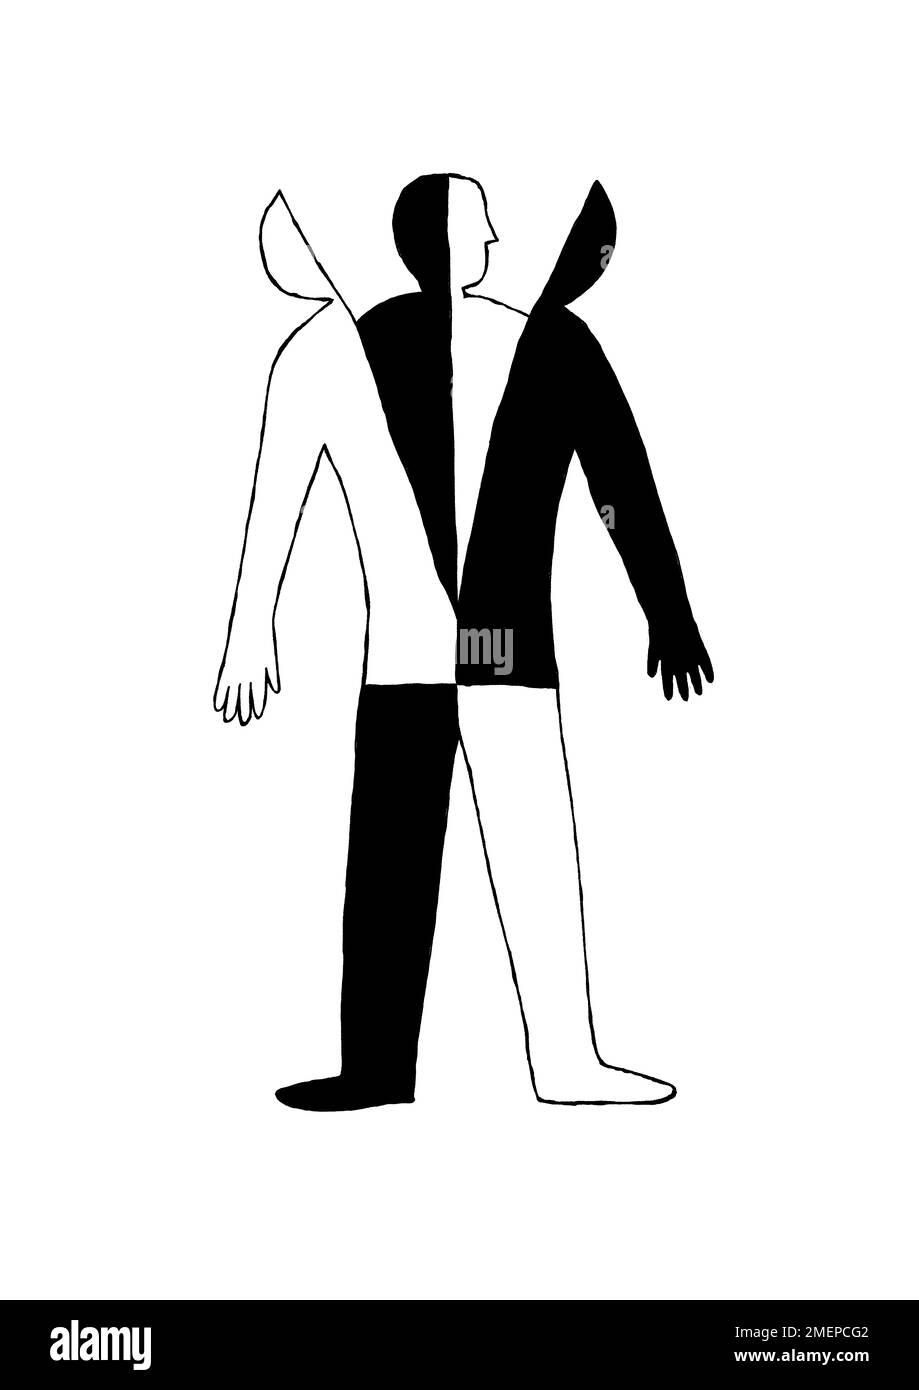 Abbildung eines Mannes, der eine halb weiße und halb schwarze Außenjacke abwirft, um die gleiche Figur auf der Innenseite zu enthüllen - ein Argument gegen die Segregation Stockfoto